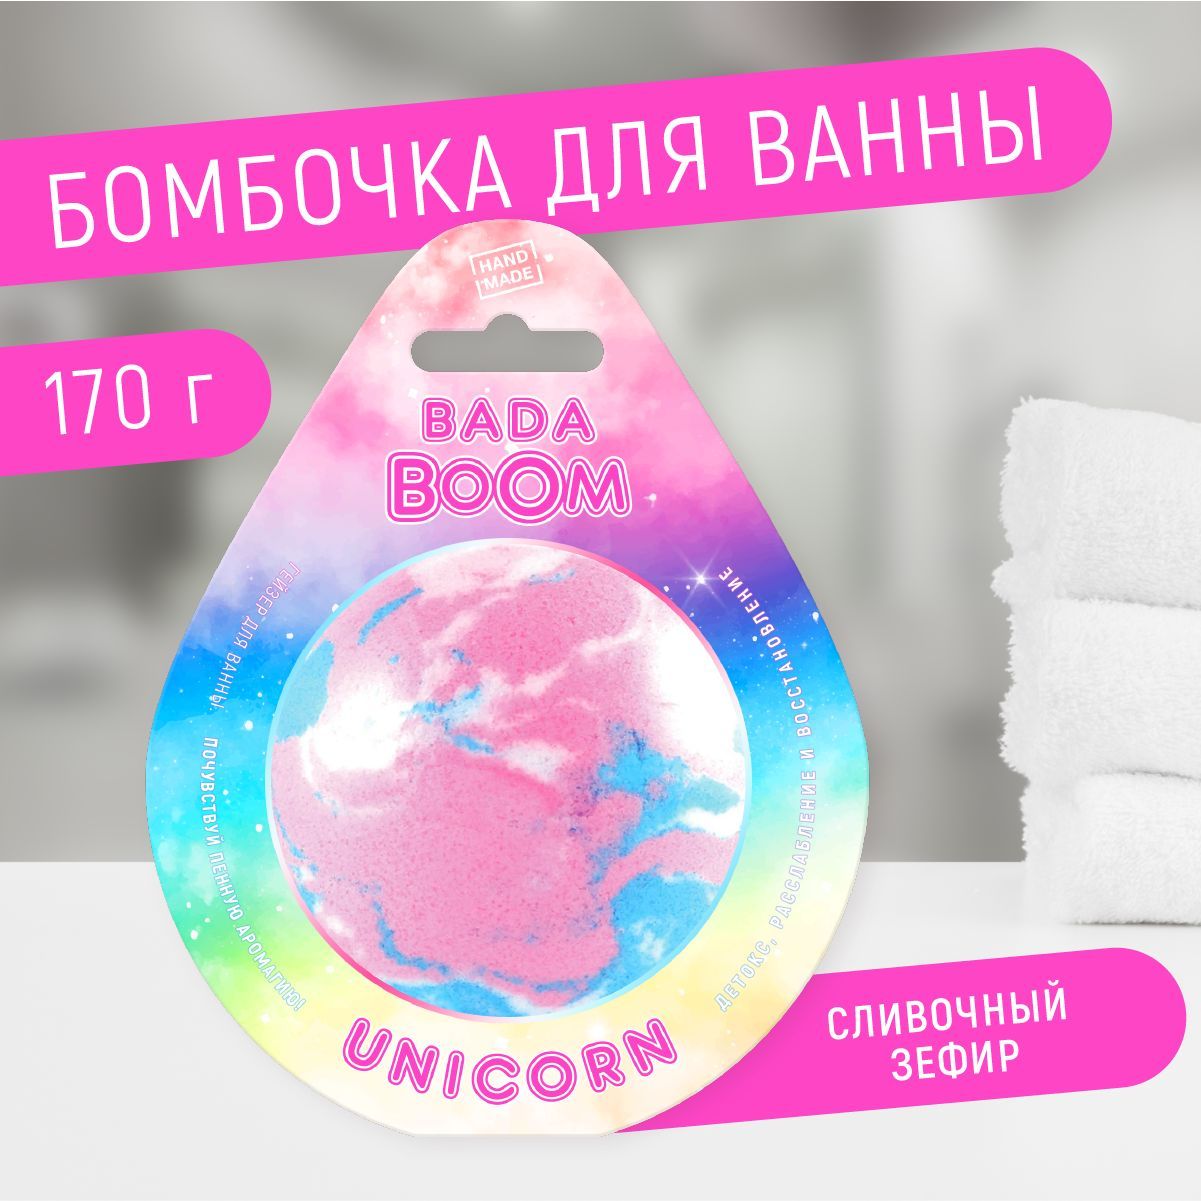 Бомбочка для ванны эко гейзер Unicorn сливочный зефир 170 г ilikegift маска для сна с вкладышем unicorn in the clouds